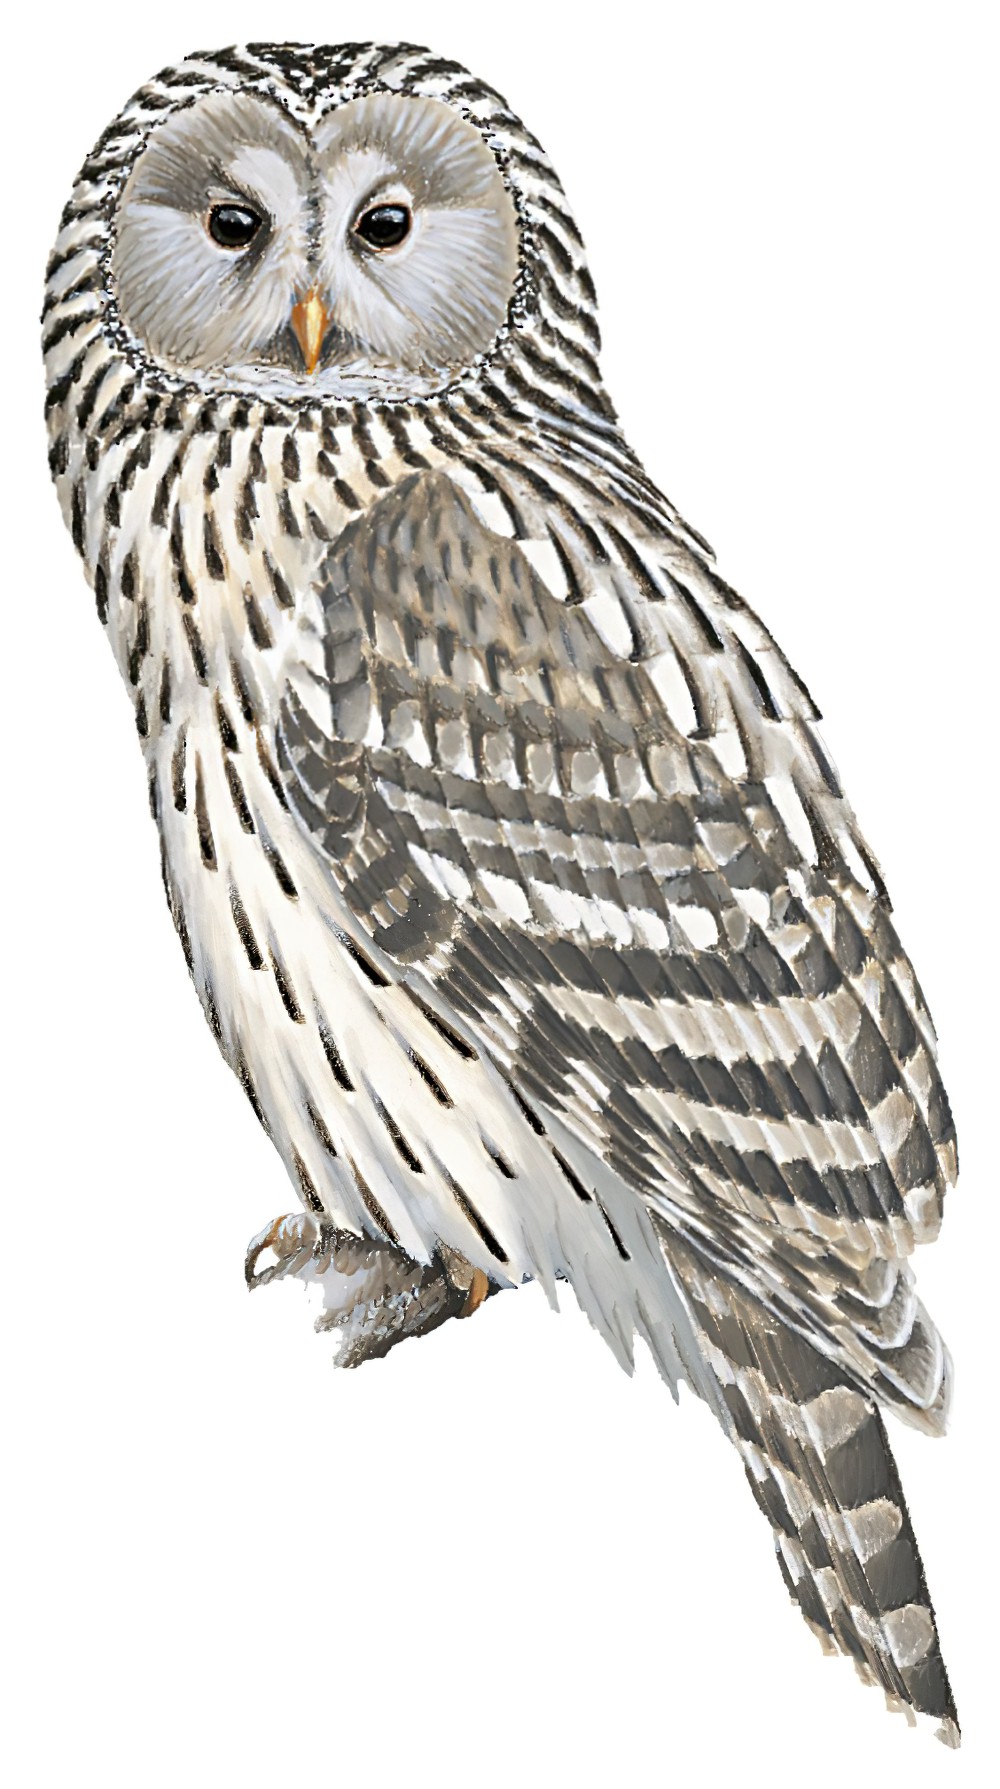 Ural Owl / Strix uralensis